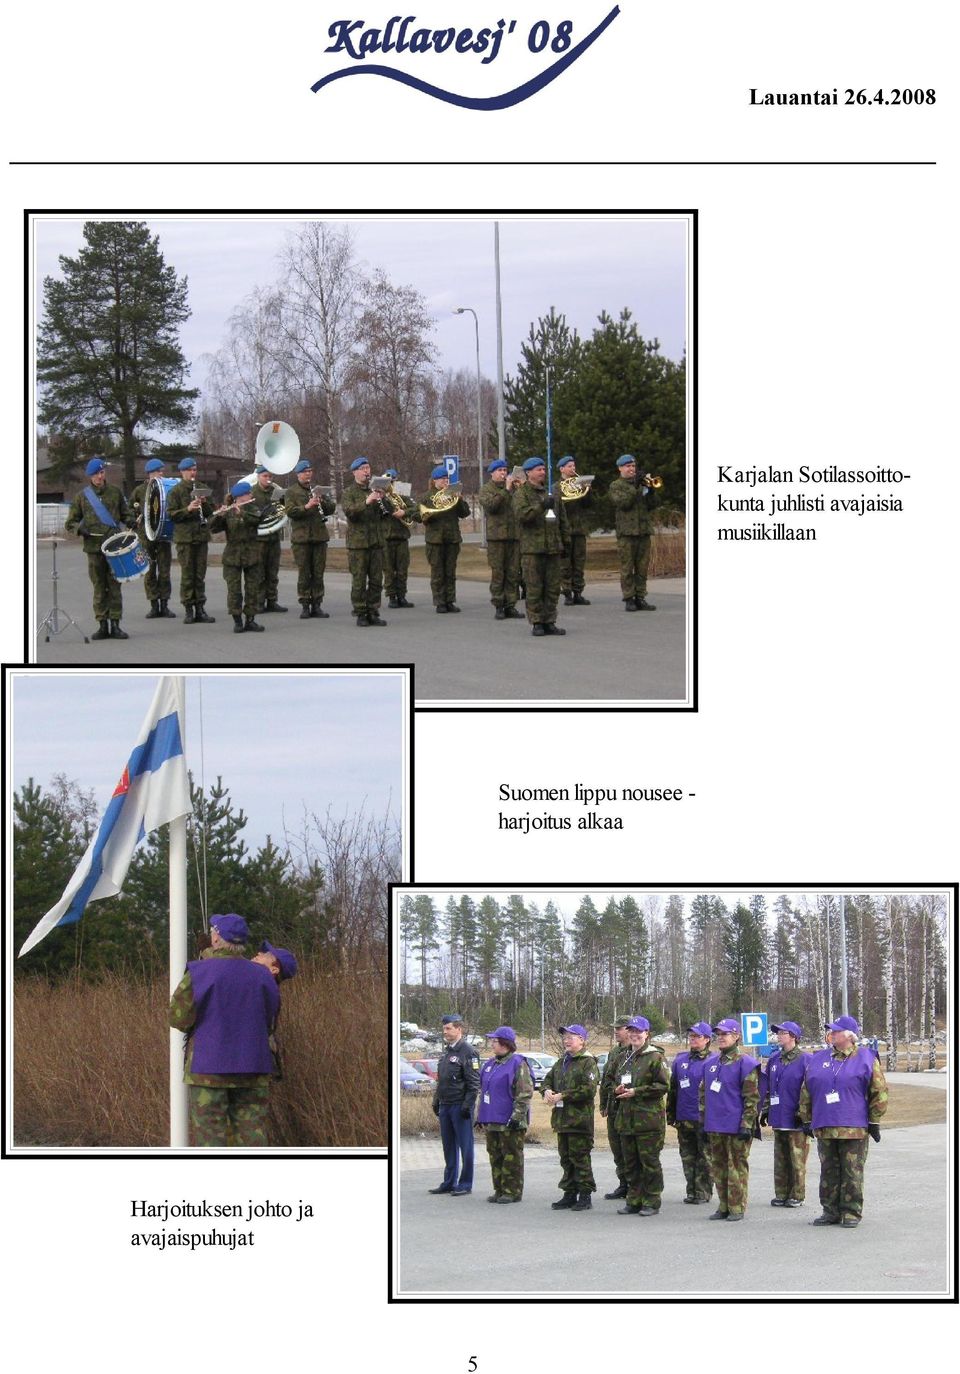 Suomen lippu nousee harjoitus